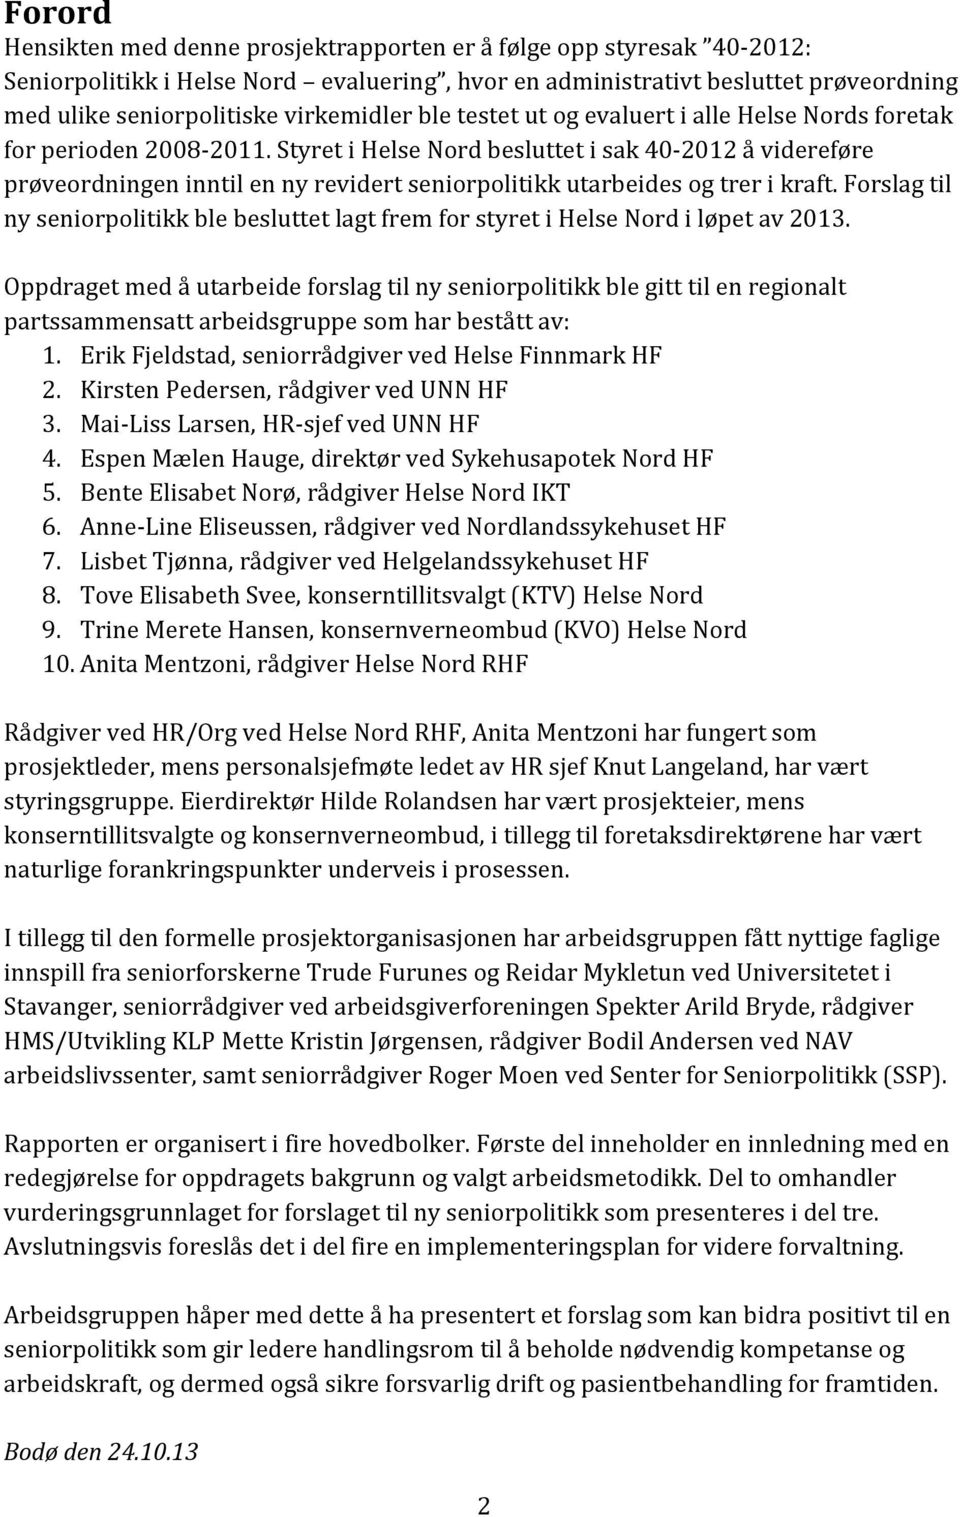 Styret i Helse Nord besluttet i sak 40-2012 å videreføre prøveordningen inntil en ny revidert seniorpolitikk utarbeides og trer i kraft.